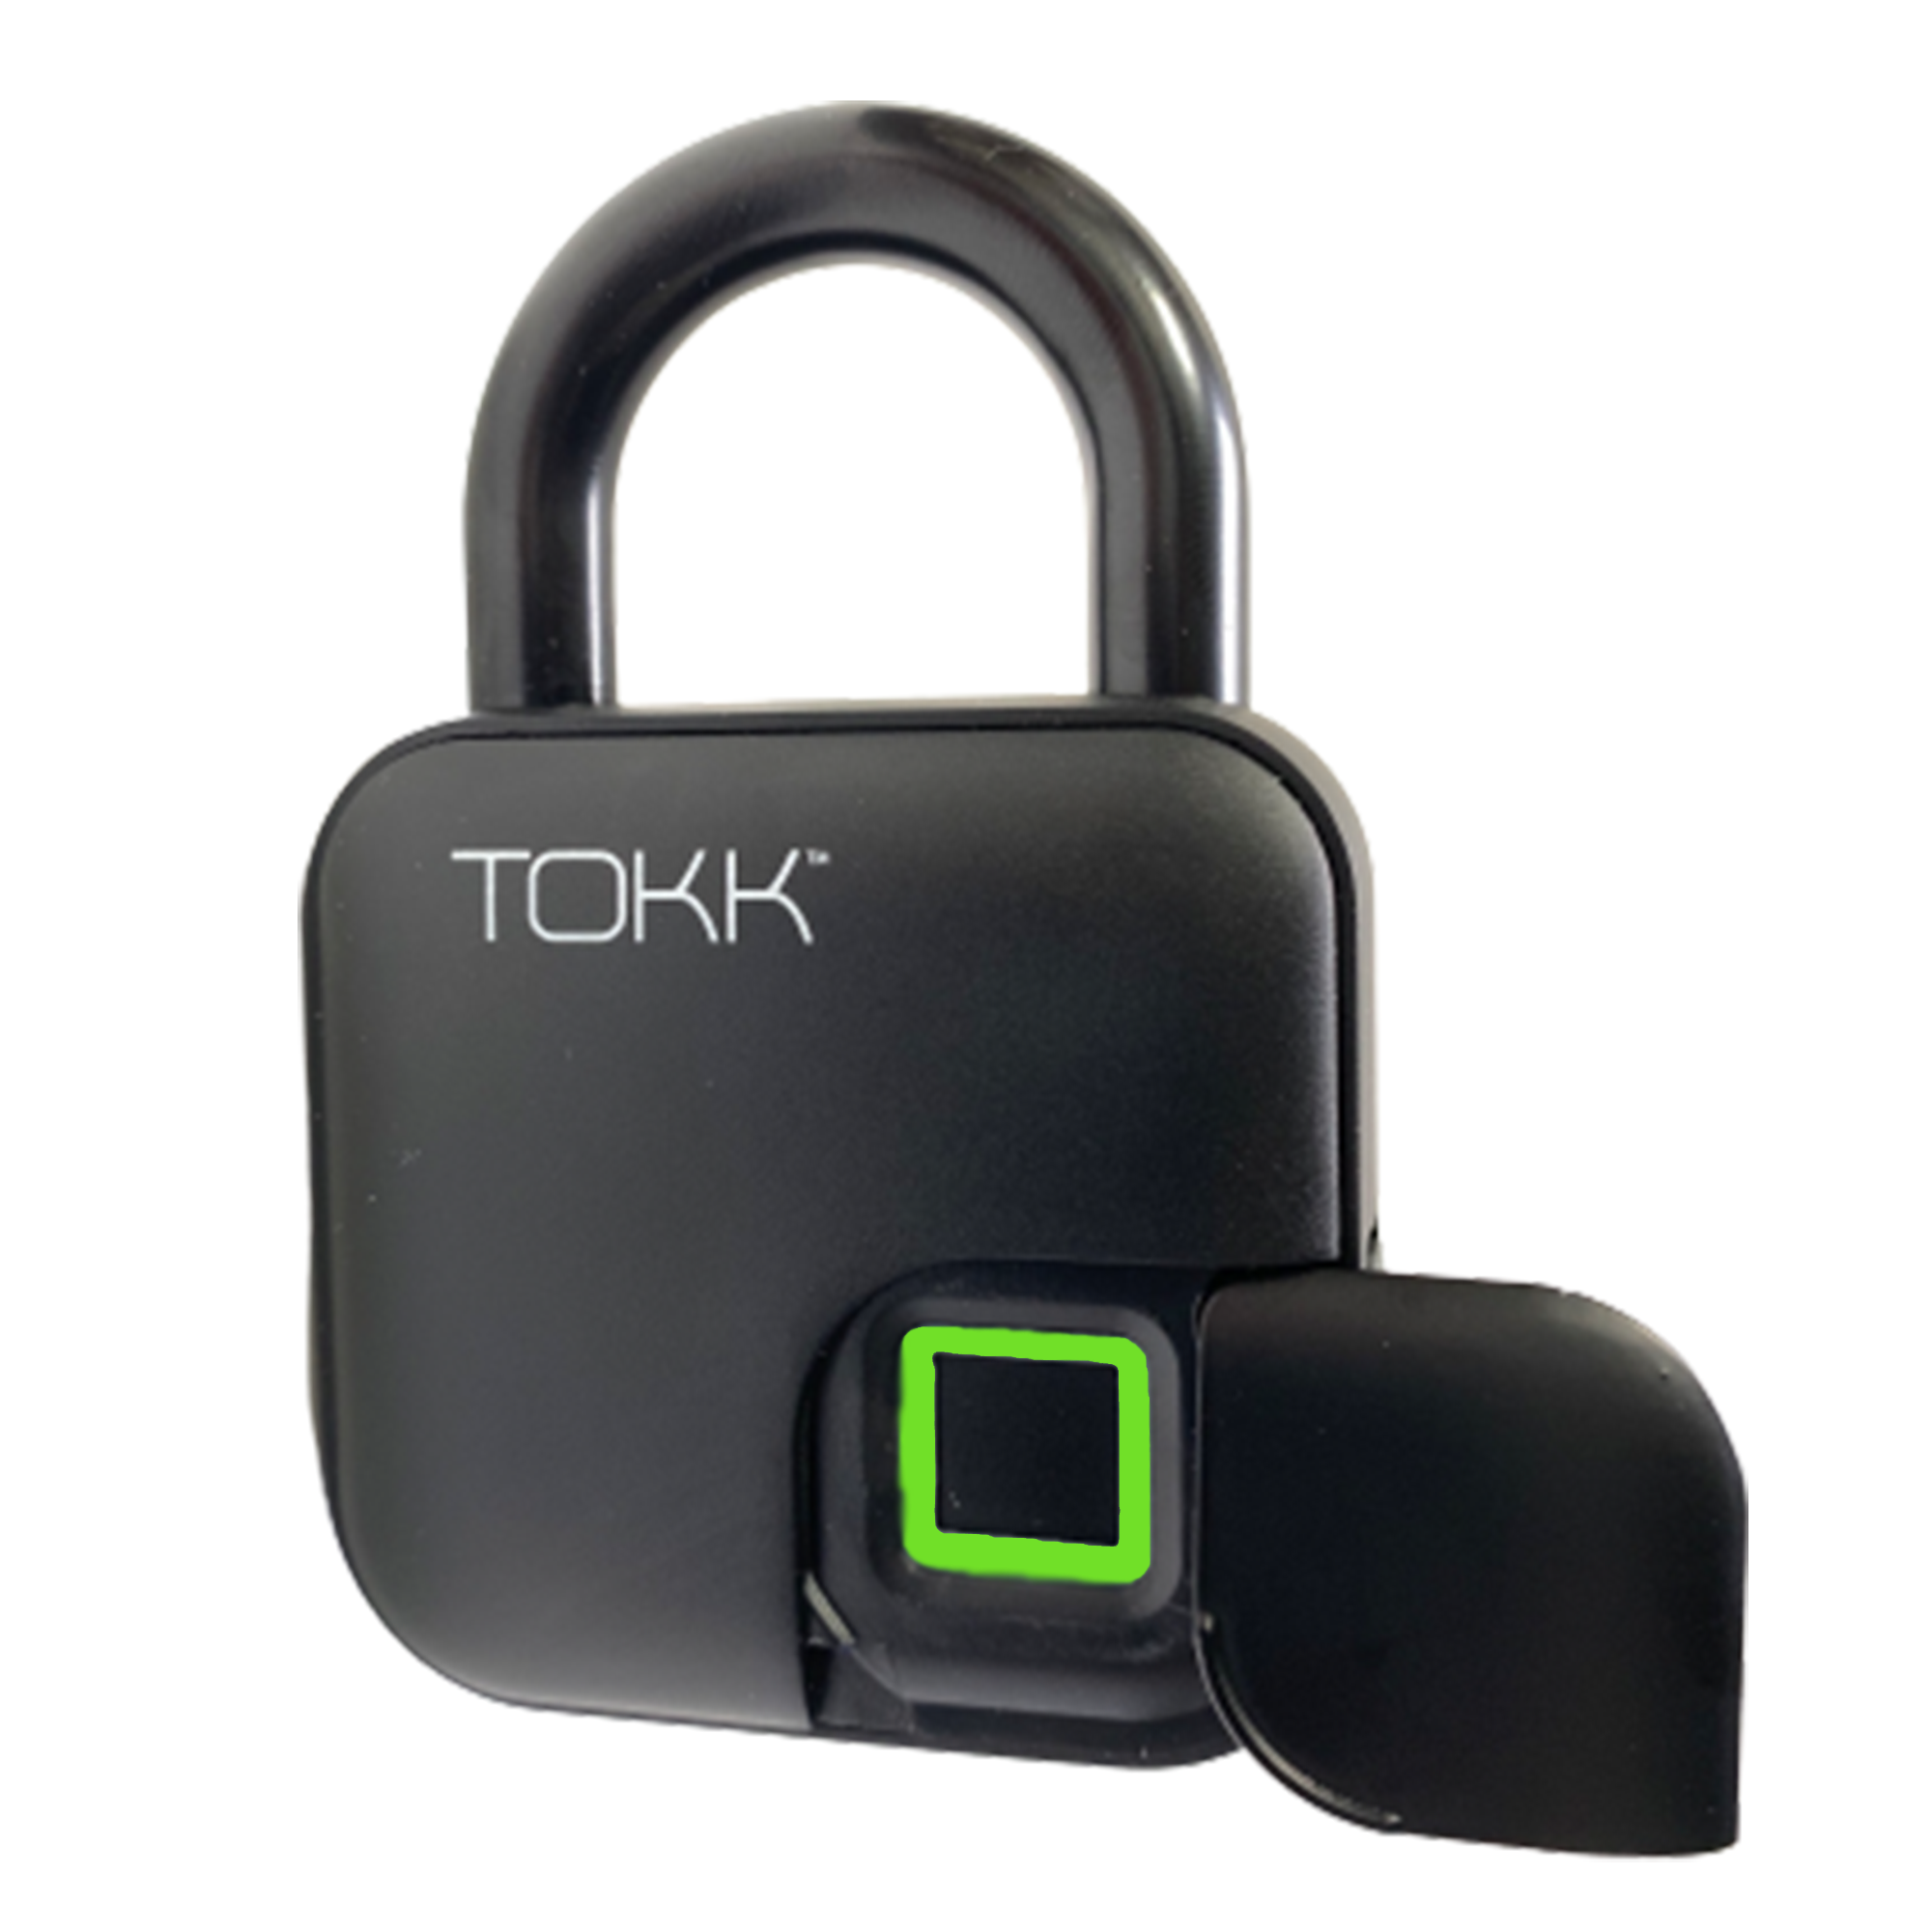 TOKK™ FINGERPRINT LOCK PL3 - Tokk | Pred Technologies